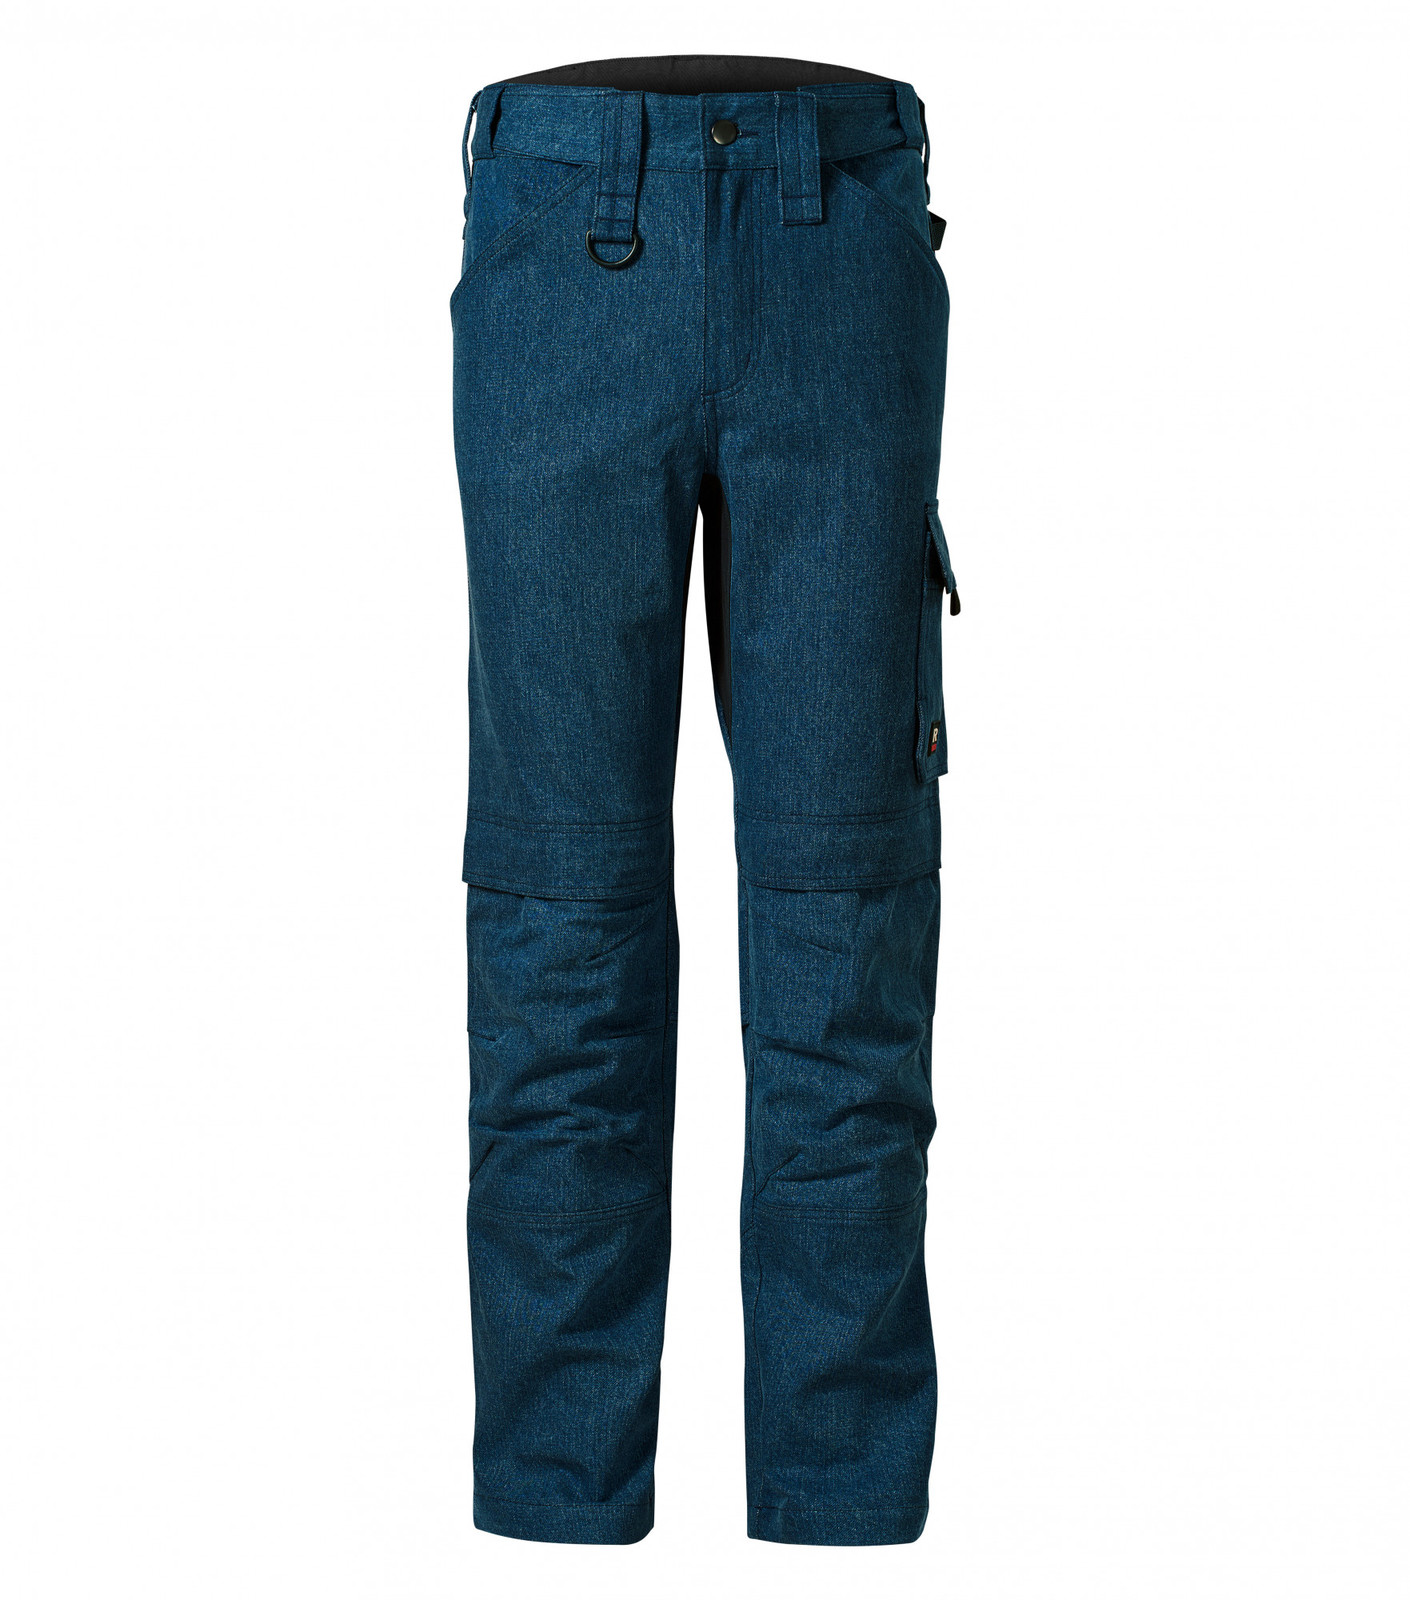 Pánske pracovné džínsy Rimeck Vertex W08 - veľkosť: 44, farba: denim